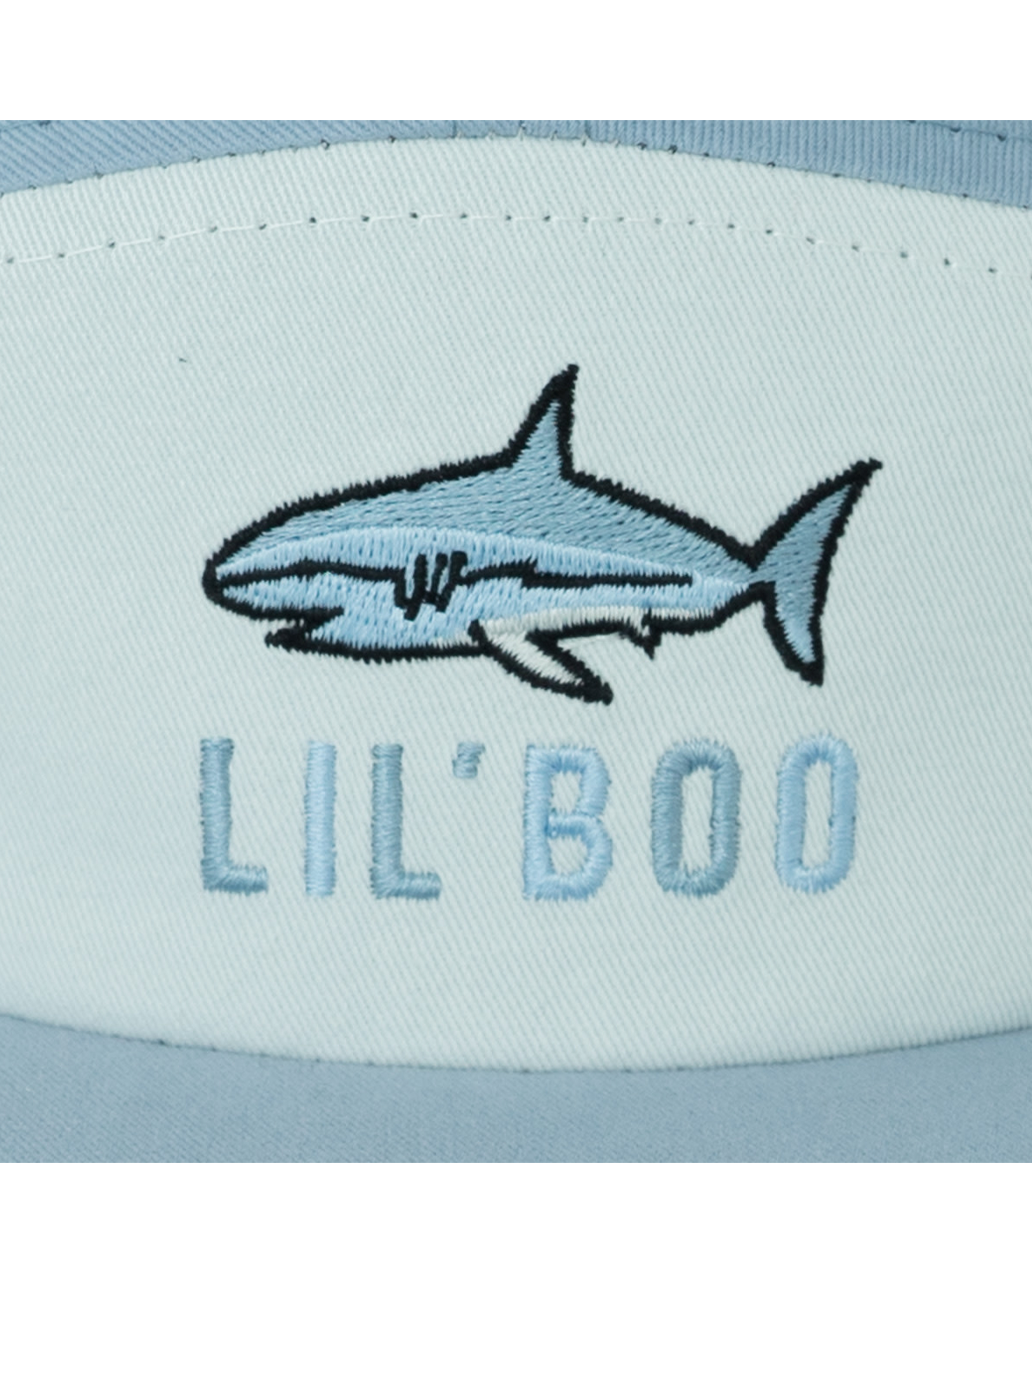 Shark baseball cap